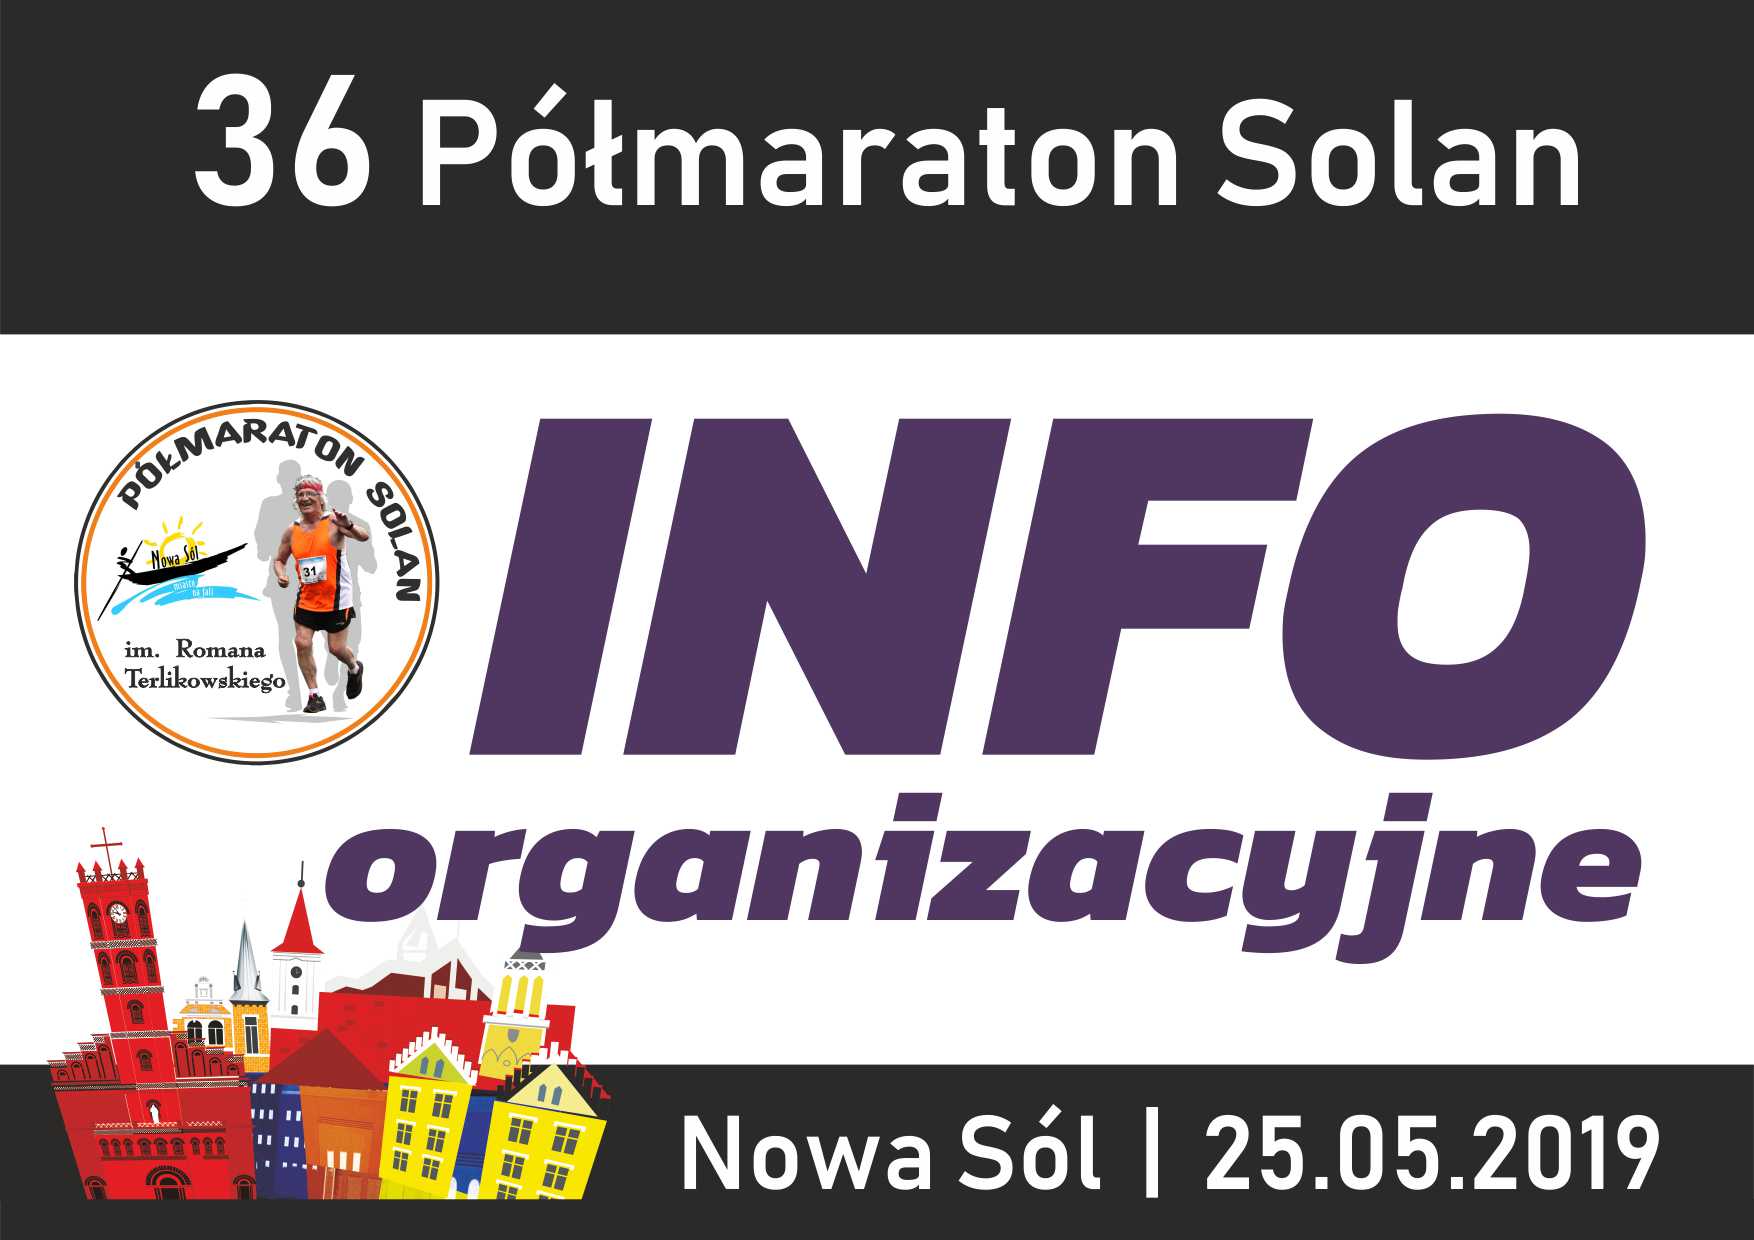 36 Półmaraton SOLAN - informacje organizacyjne